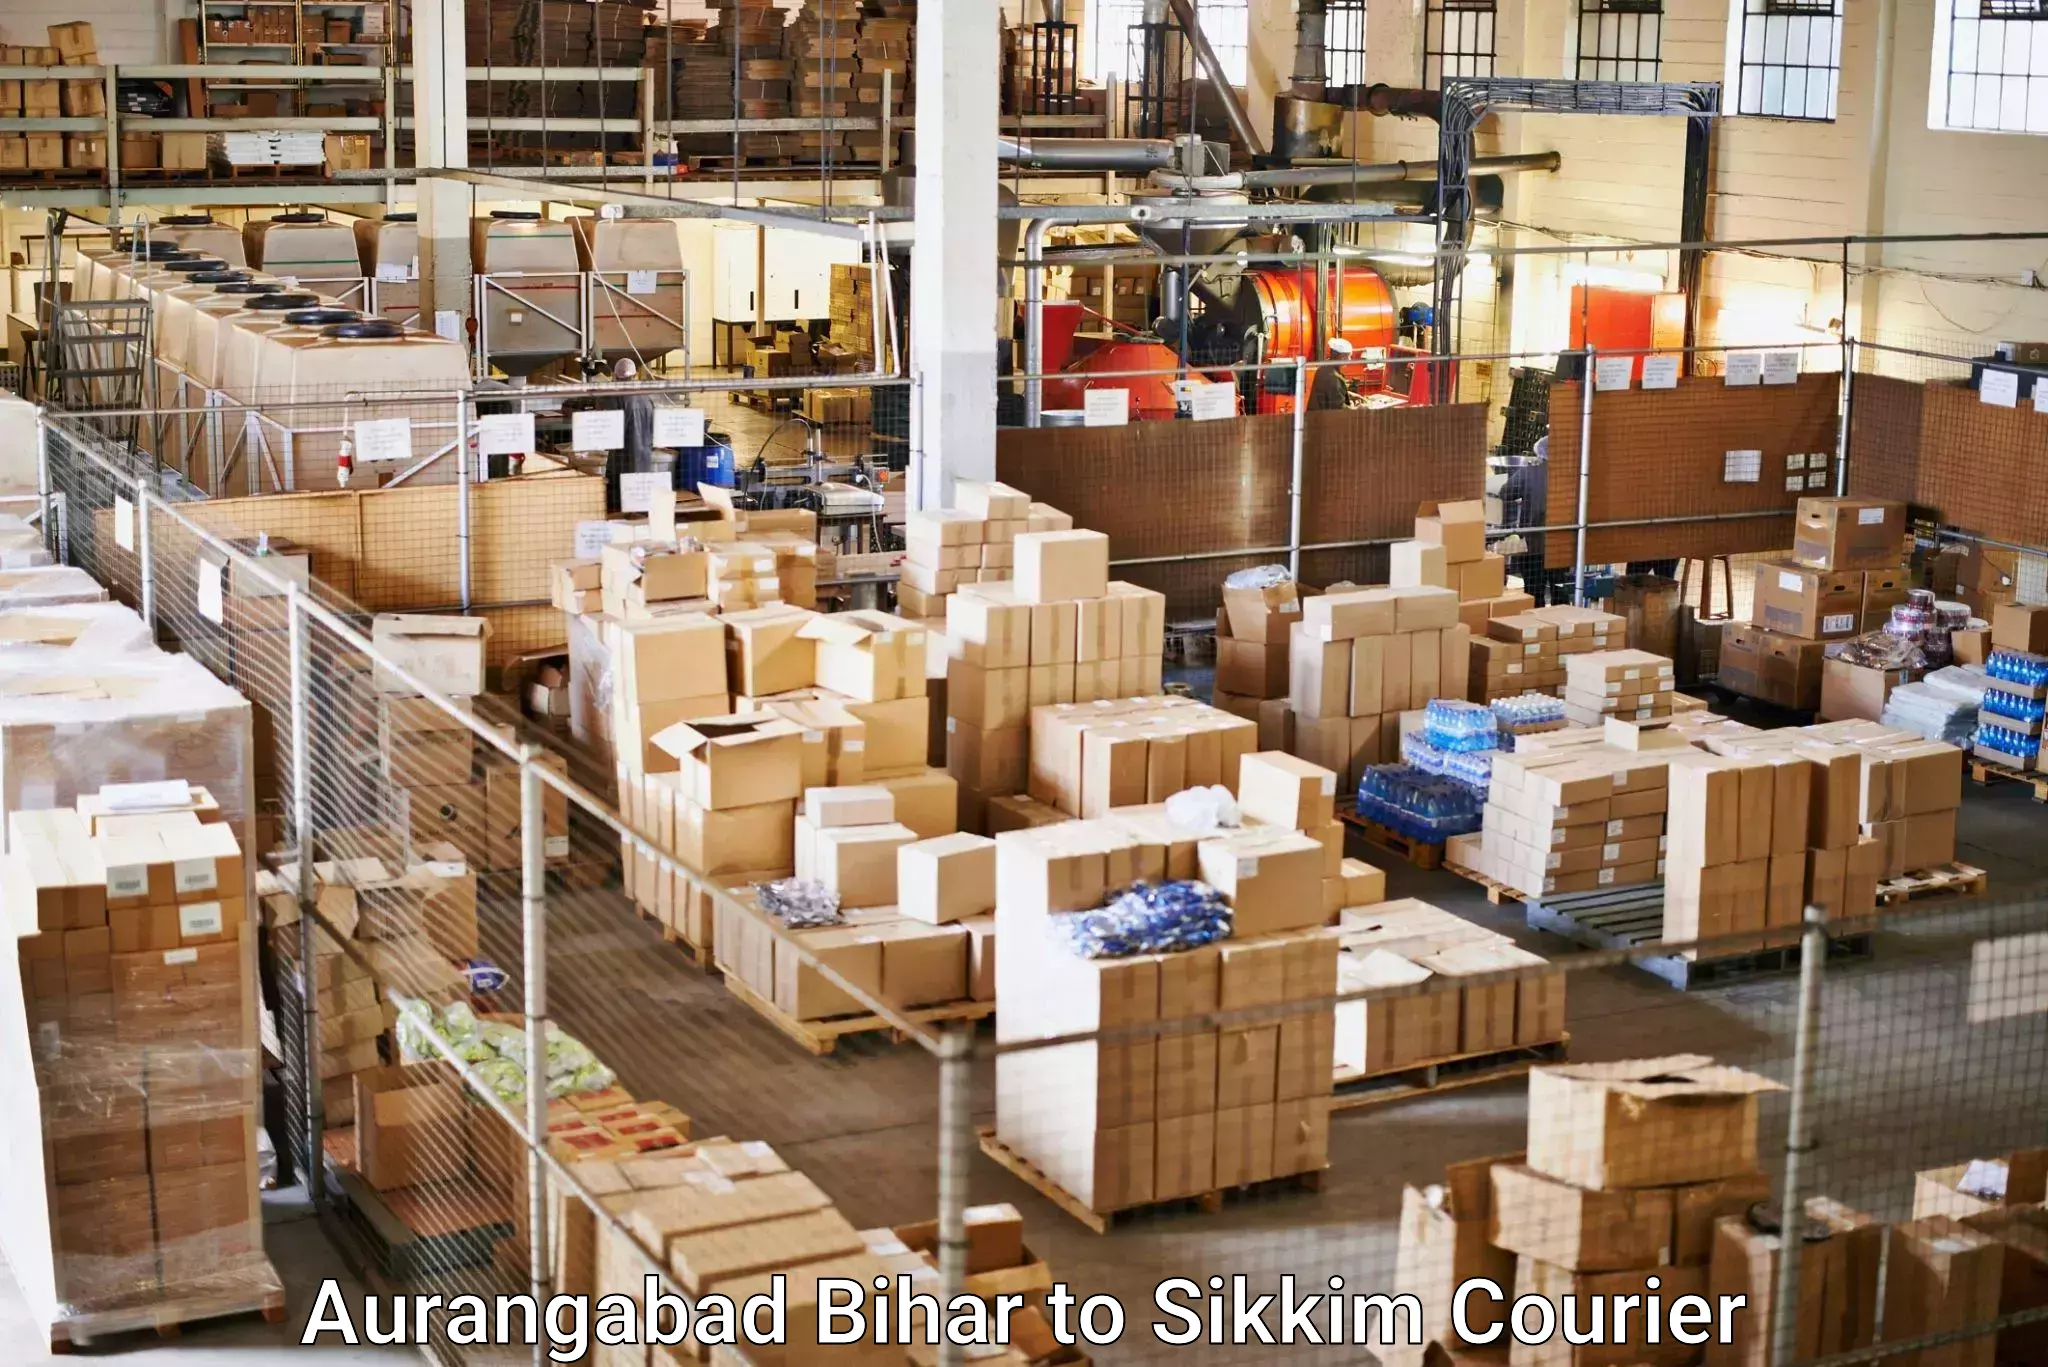 High-priority parcel service Aurangabad Bihar to Sikkim